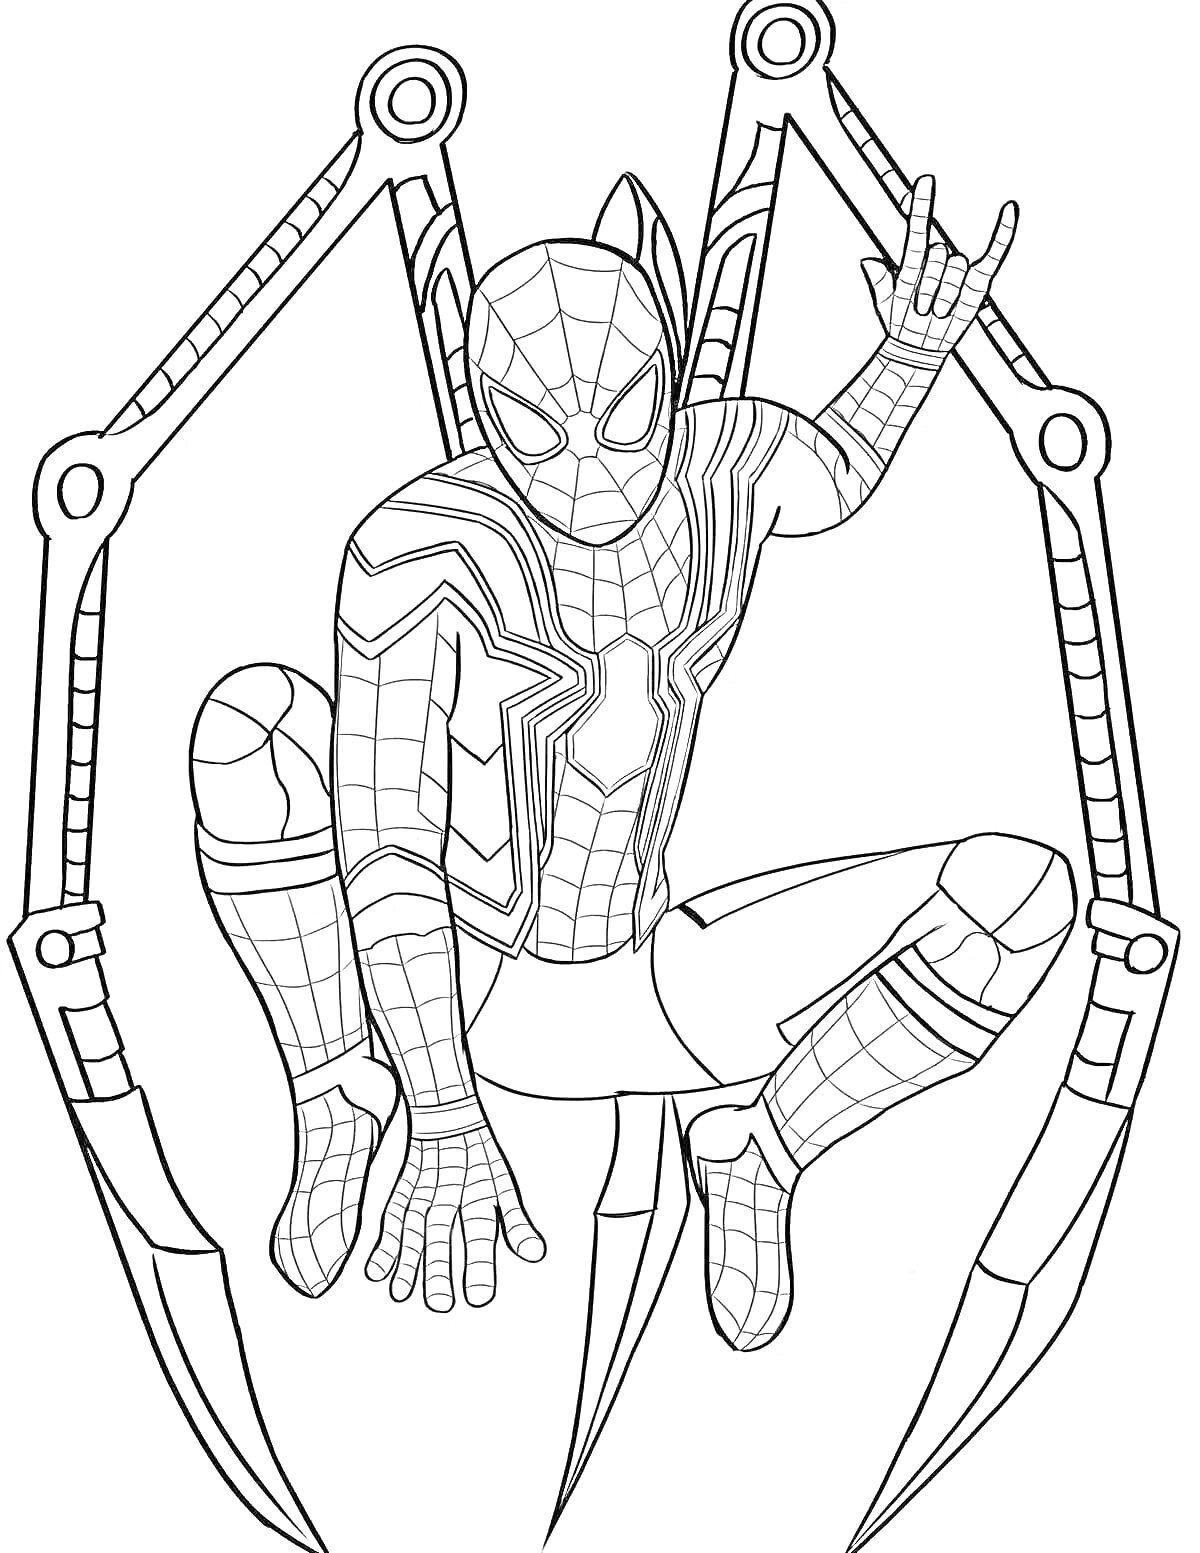 Раскраска Человек-паук с клешнями в паучьем костюме, сидящий на корточках, с поднятой рукой делая паучий жест